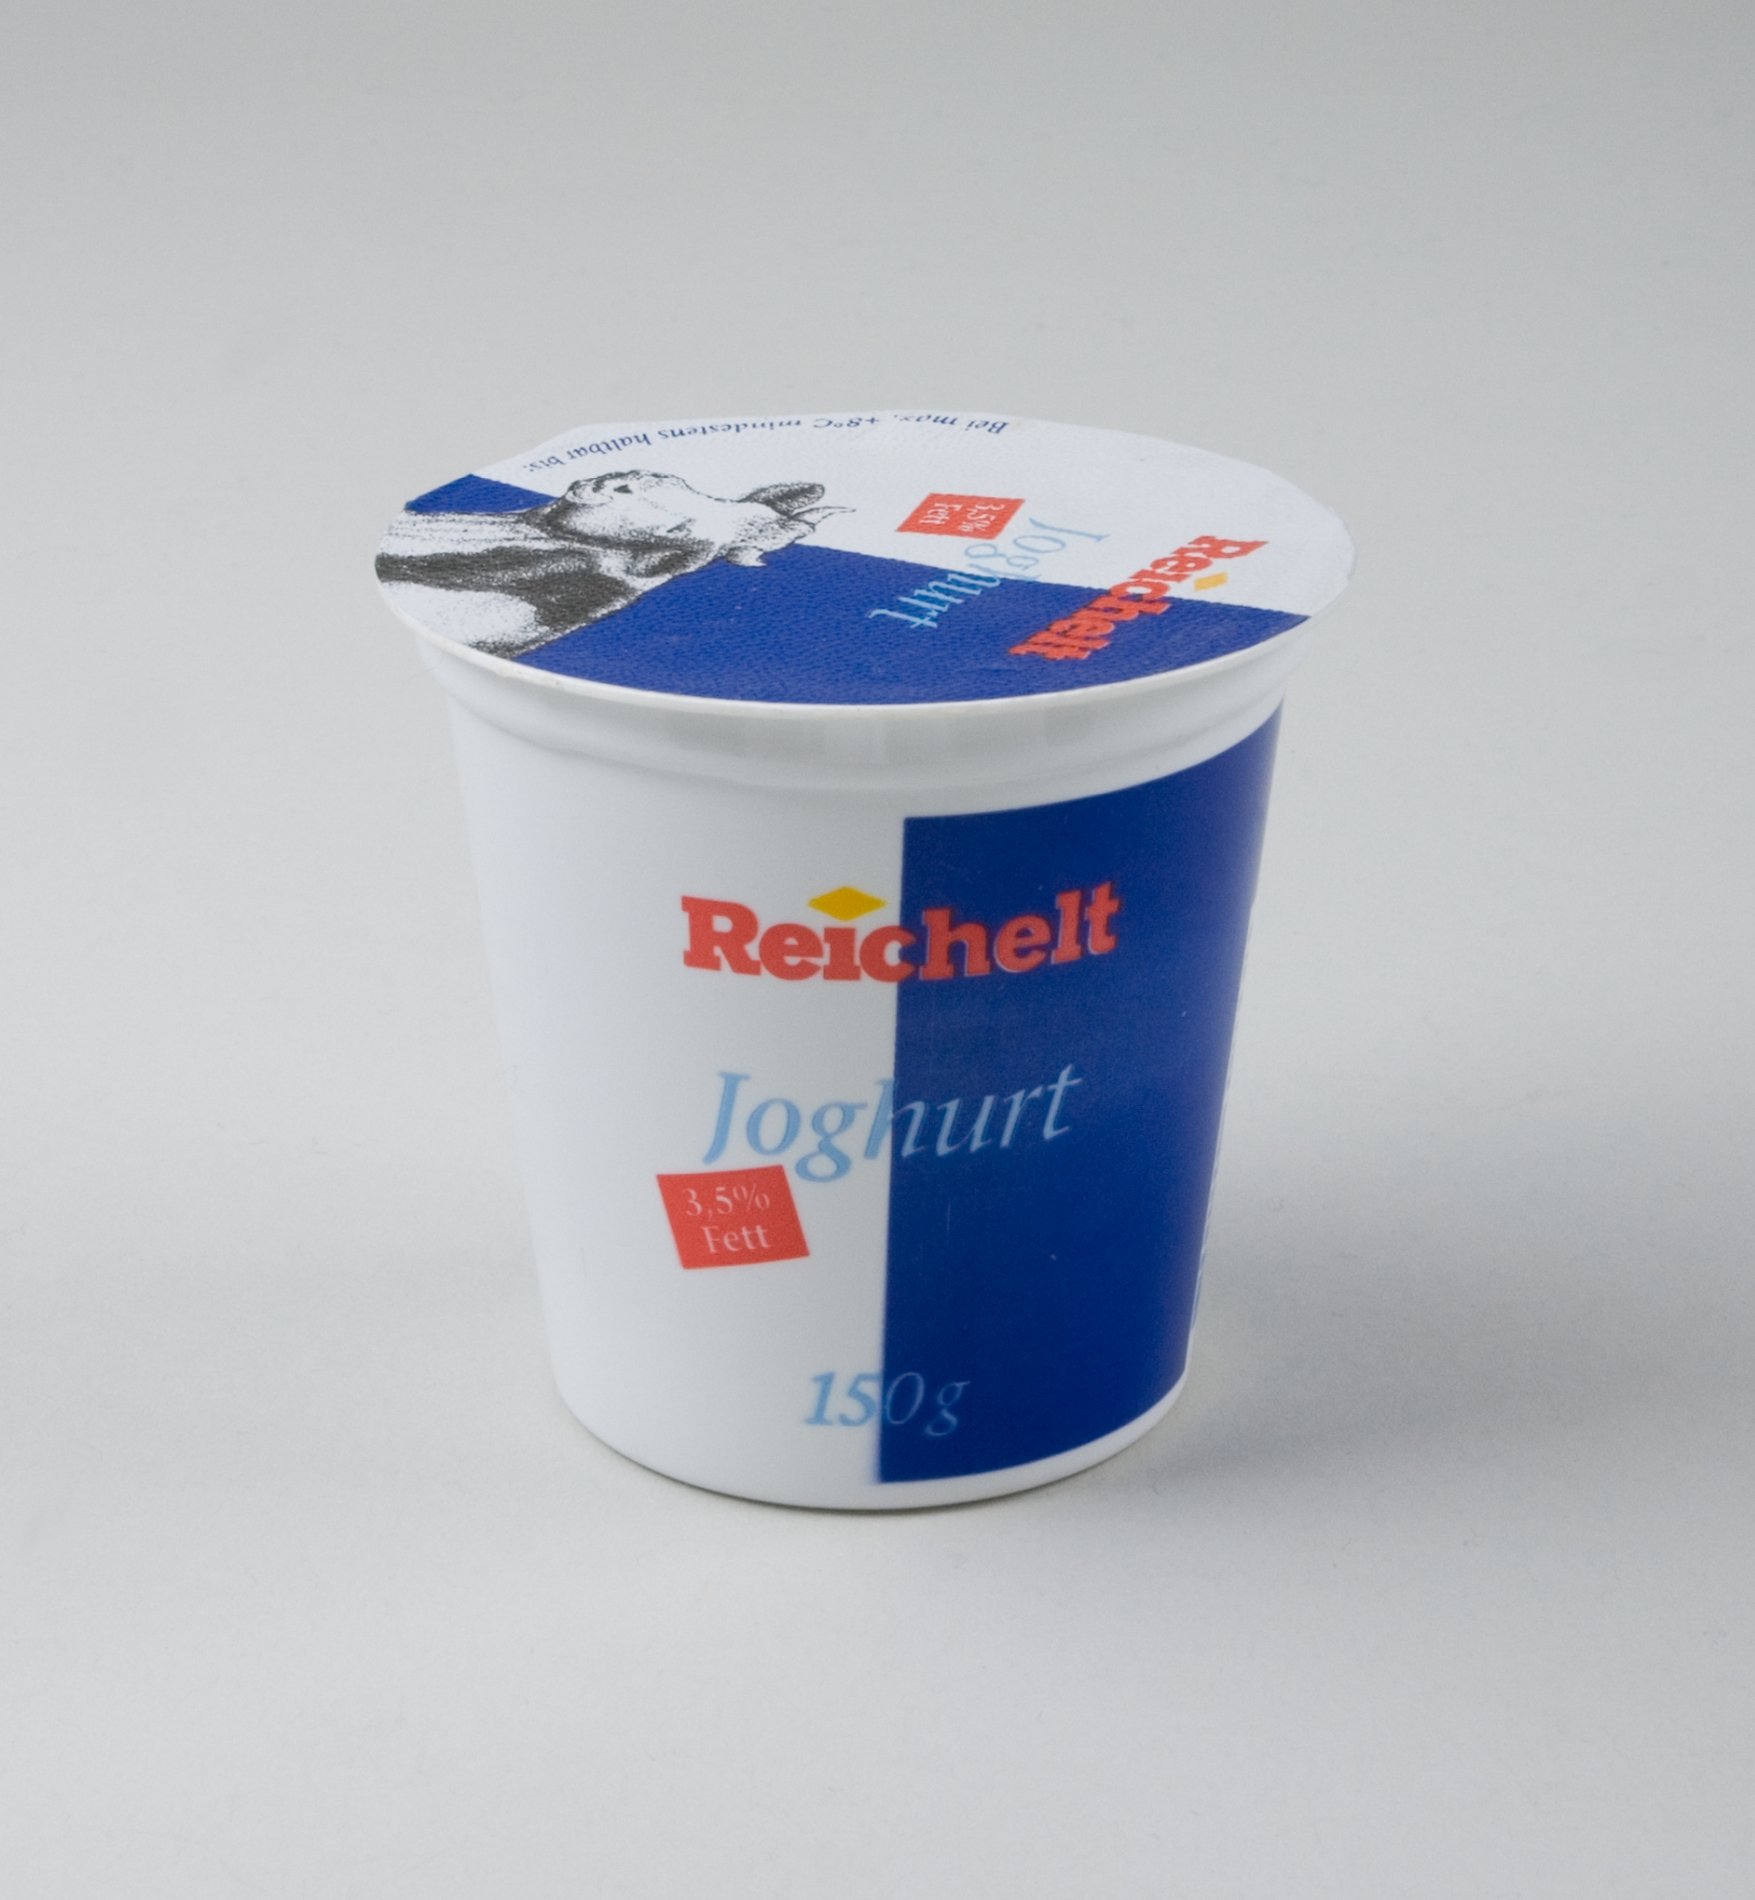 Joghurt-Becher der Firma "Reichelt" (Stiftung Domäne Dahlem - Landgut und Museum, Weiternutzung nur mit Genehmigung des Museums CC BY-NC-SA)